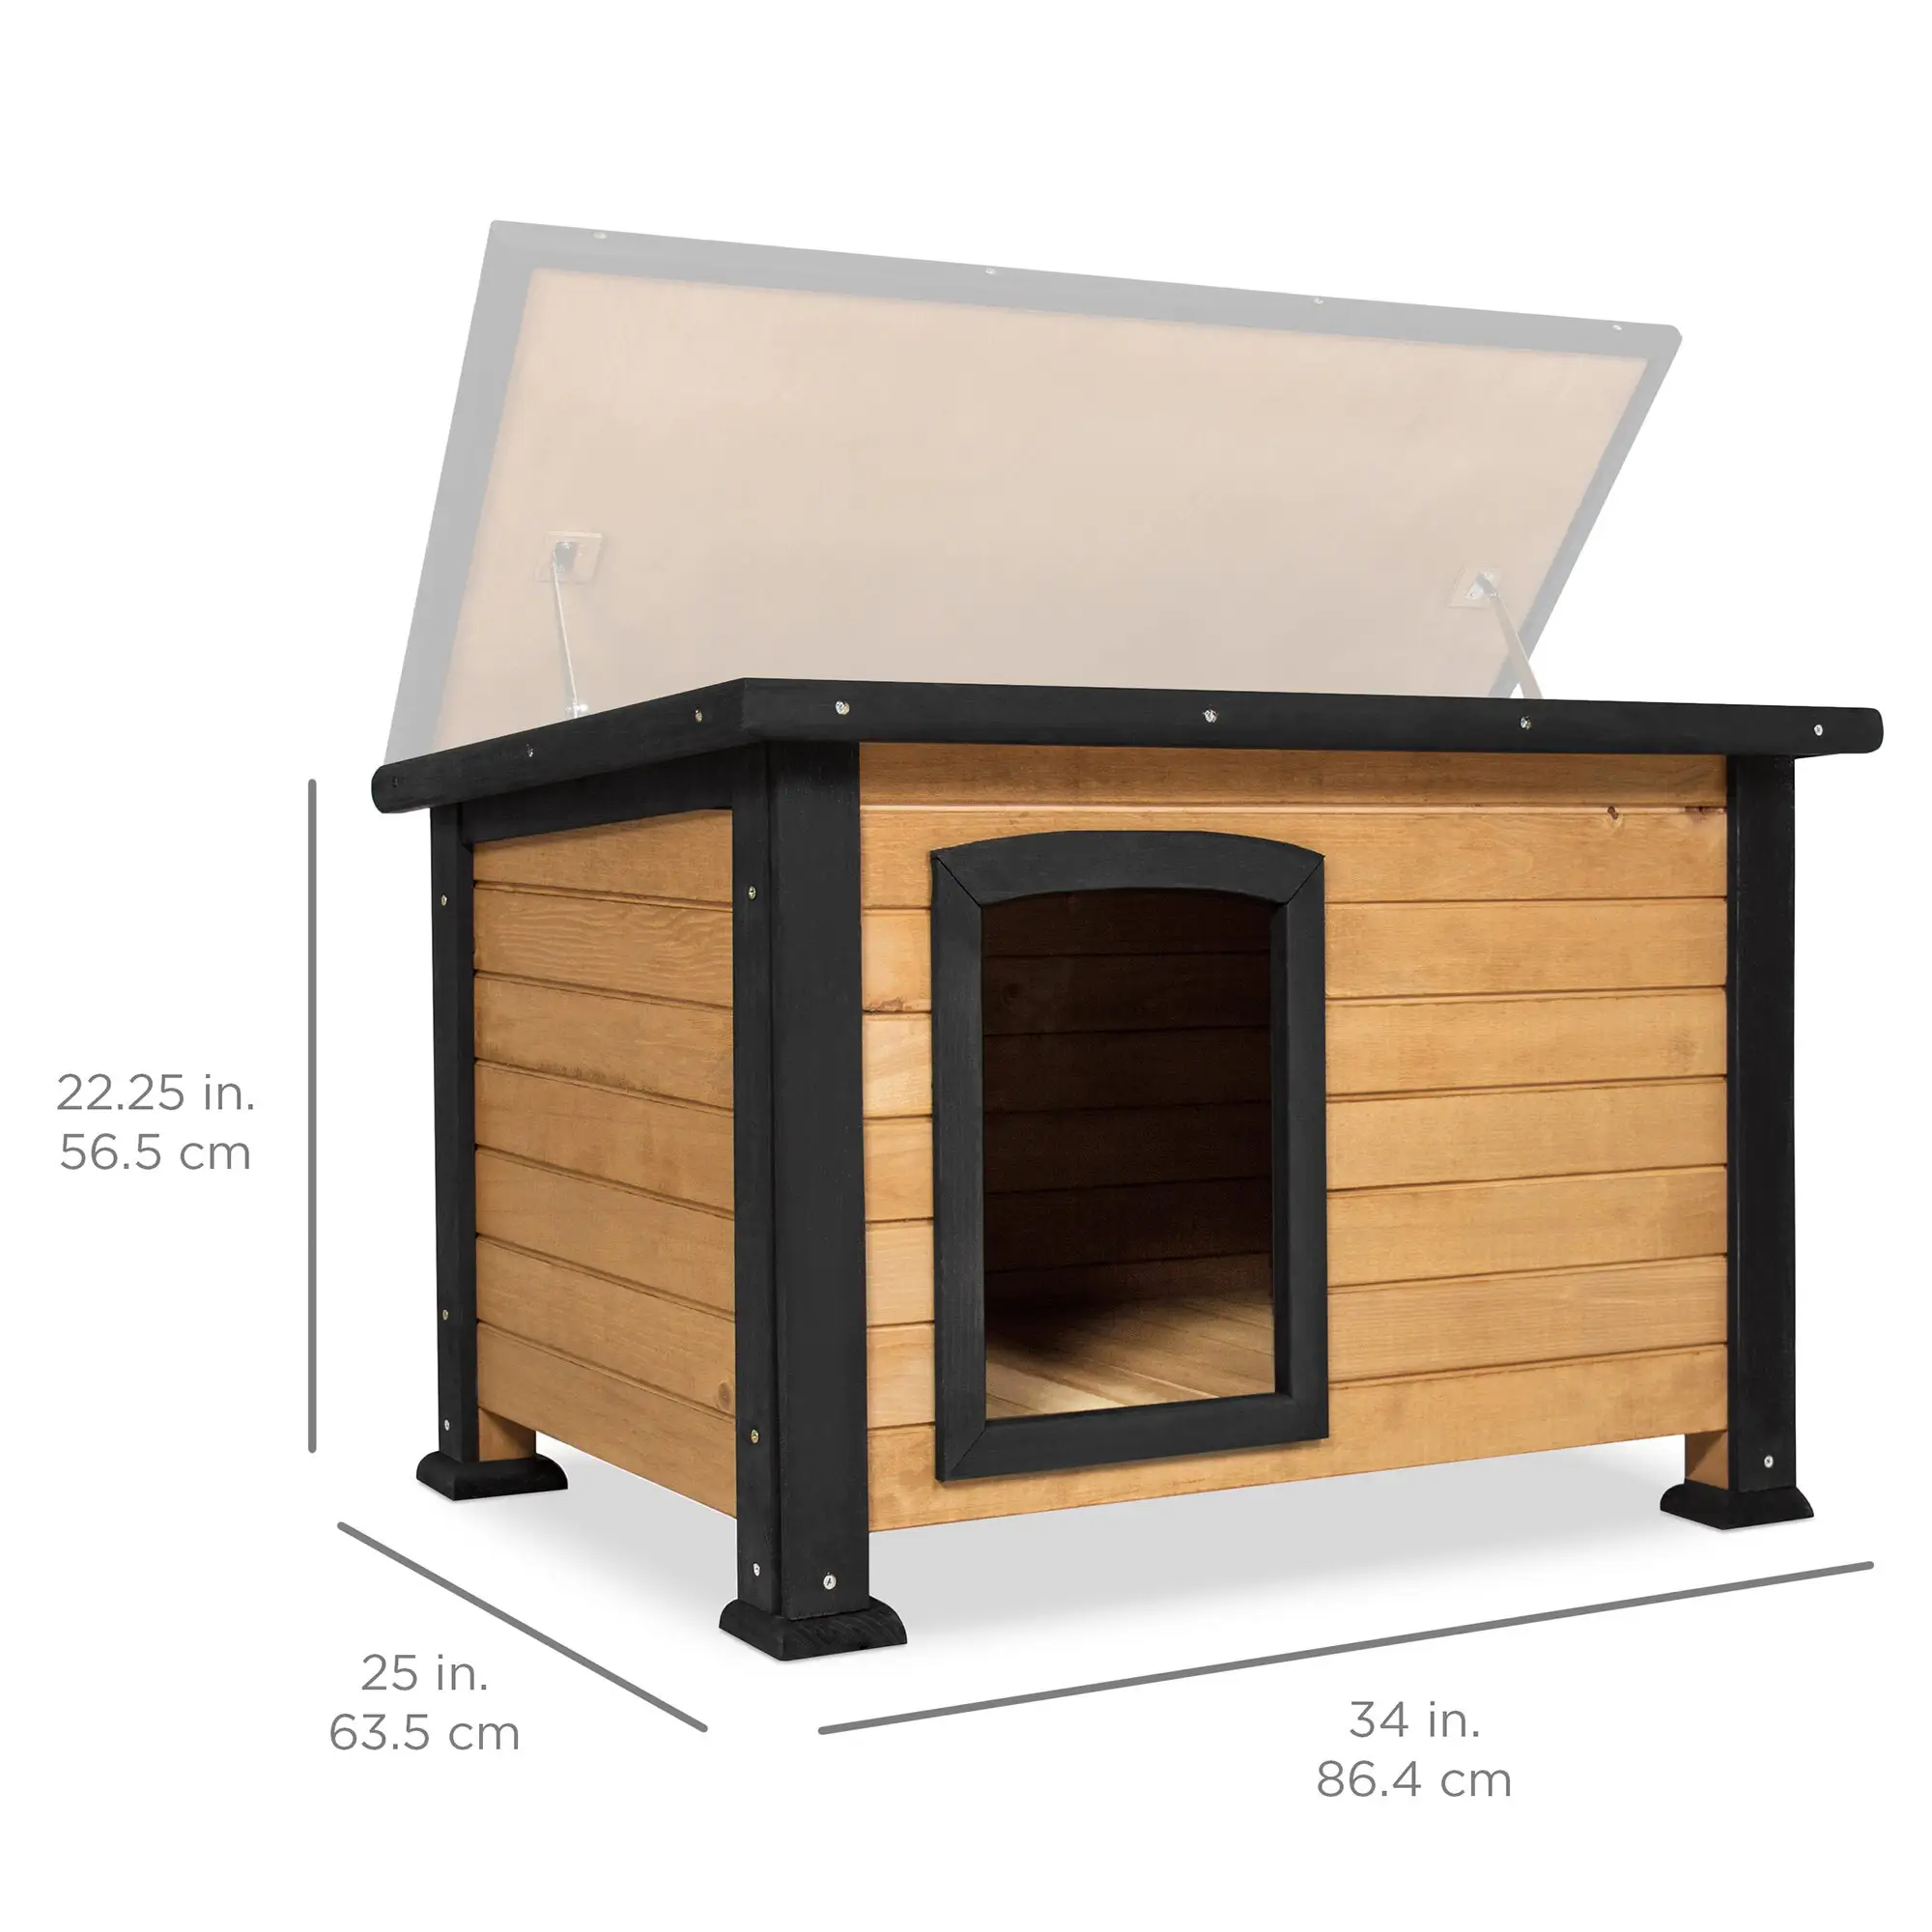 Casa de madera para perros de techo plano